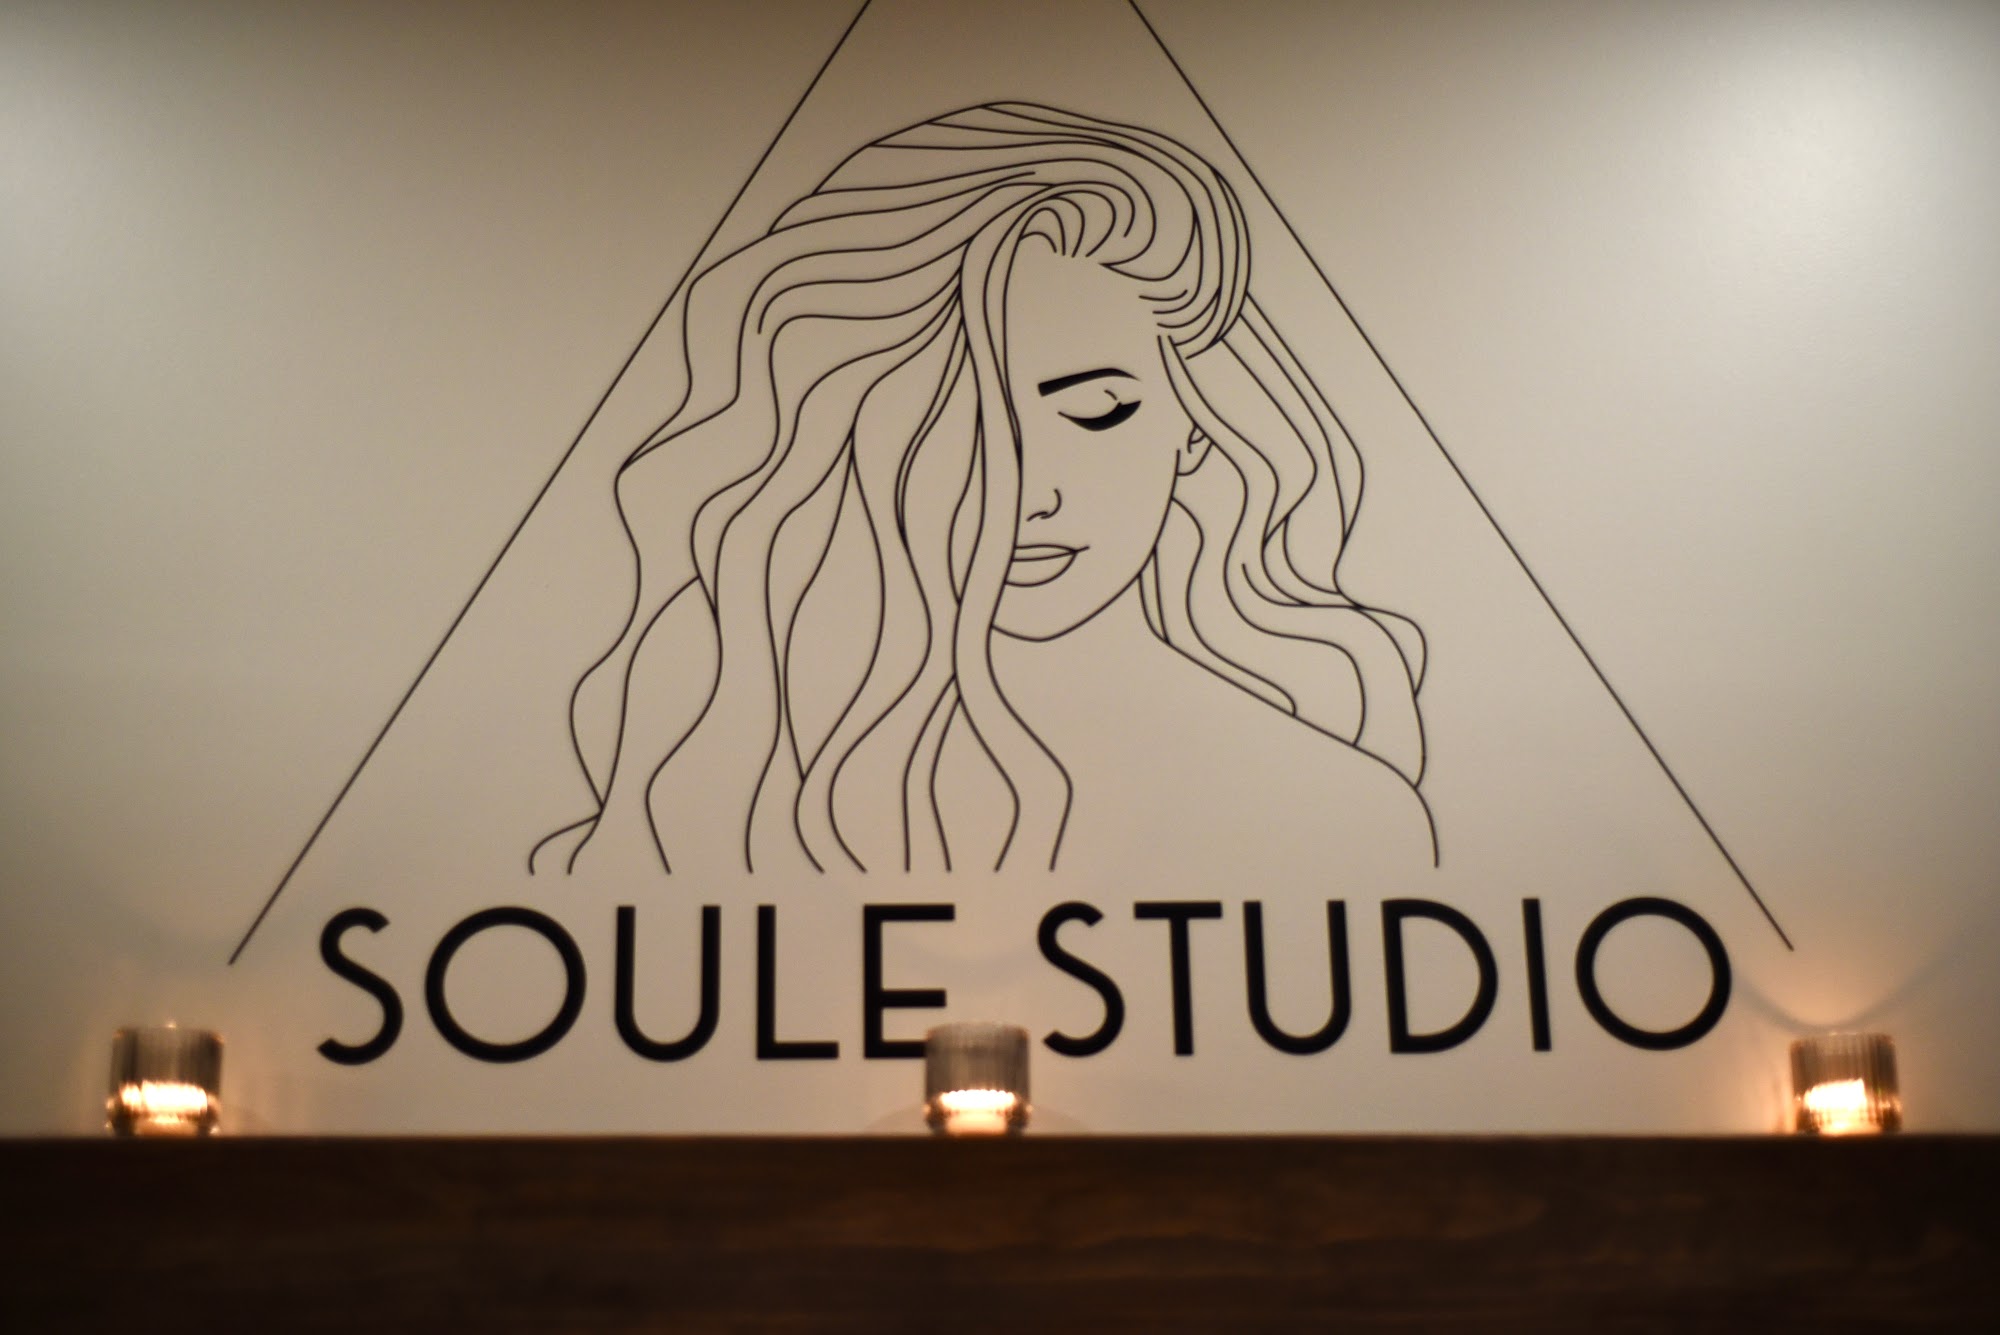 Soule Studio 4651 NJ-42, Turnersville New Jersey 08012